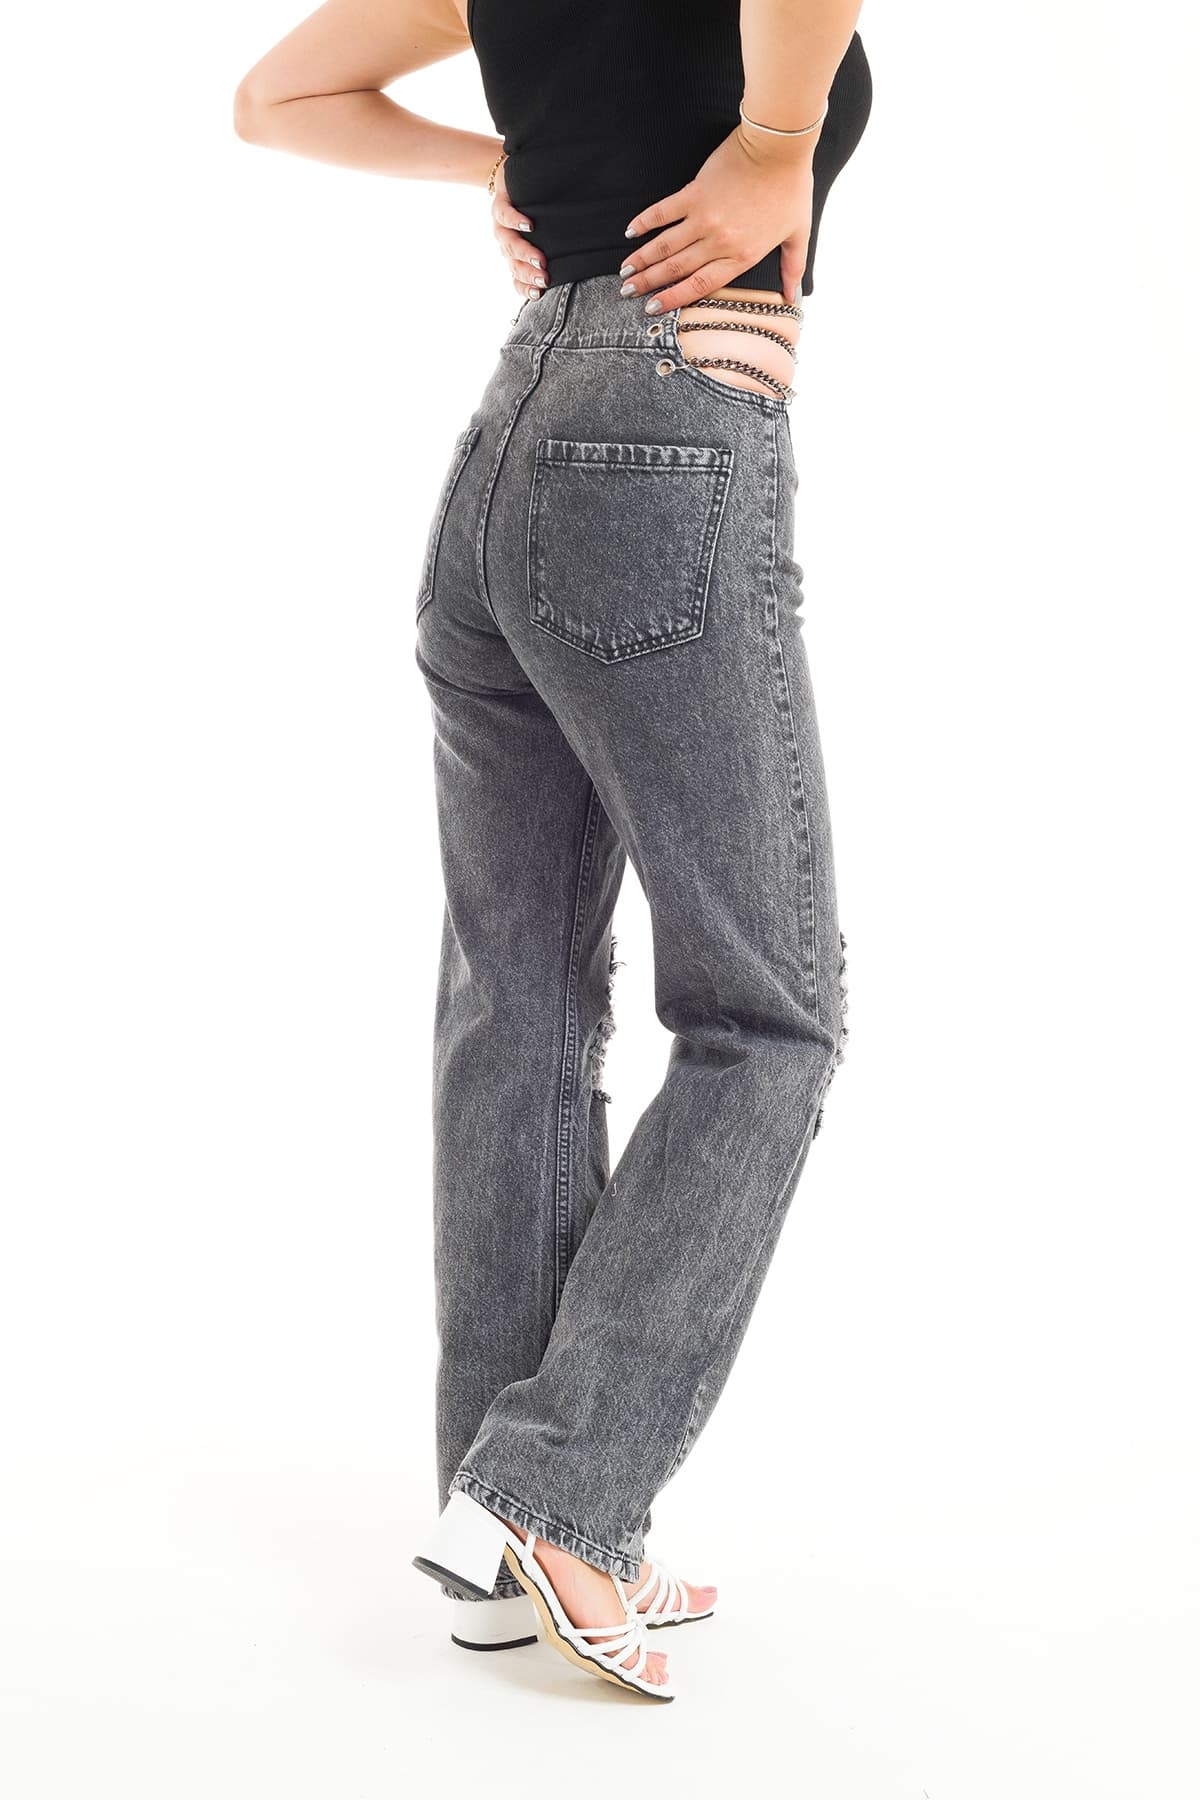 ZDN 9208 Zincir Detaylı Dizi Yırtık Model Kadın Kot Pantolon